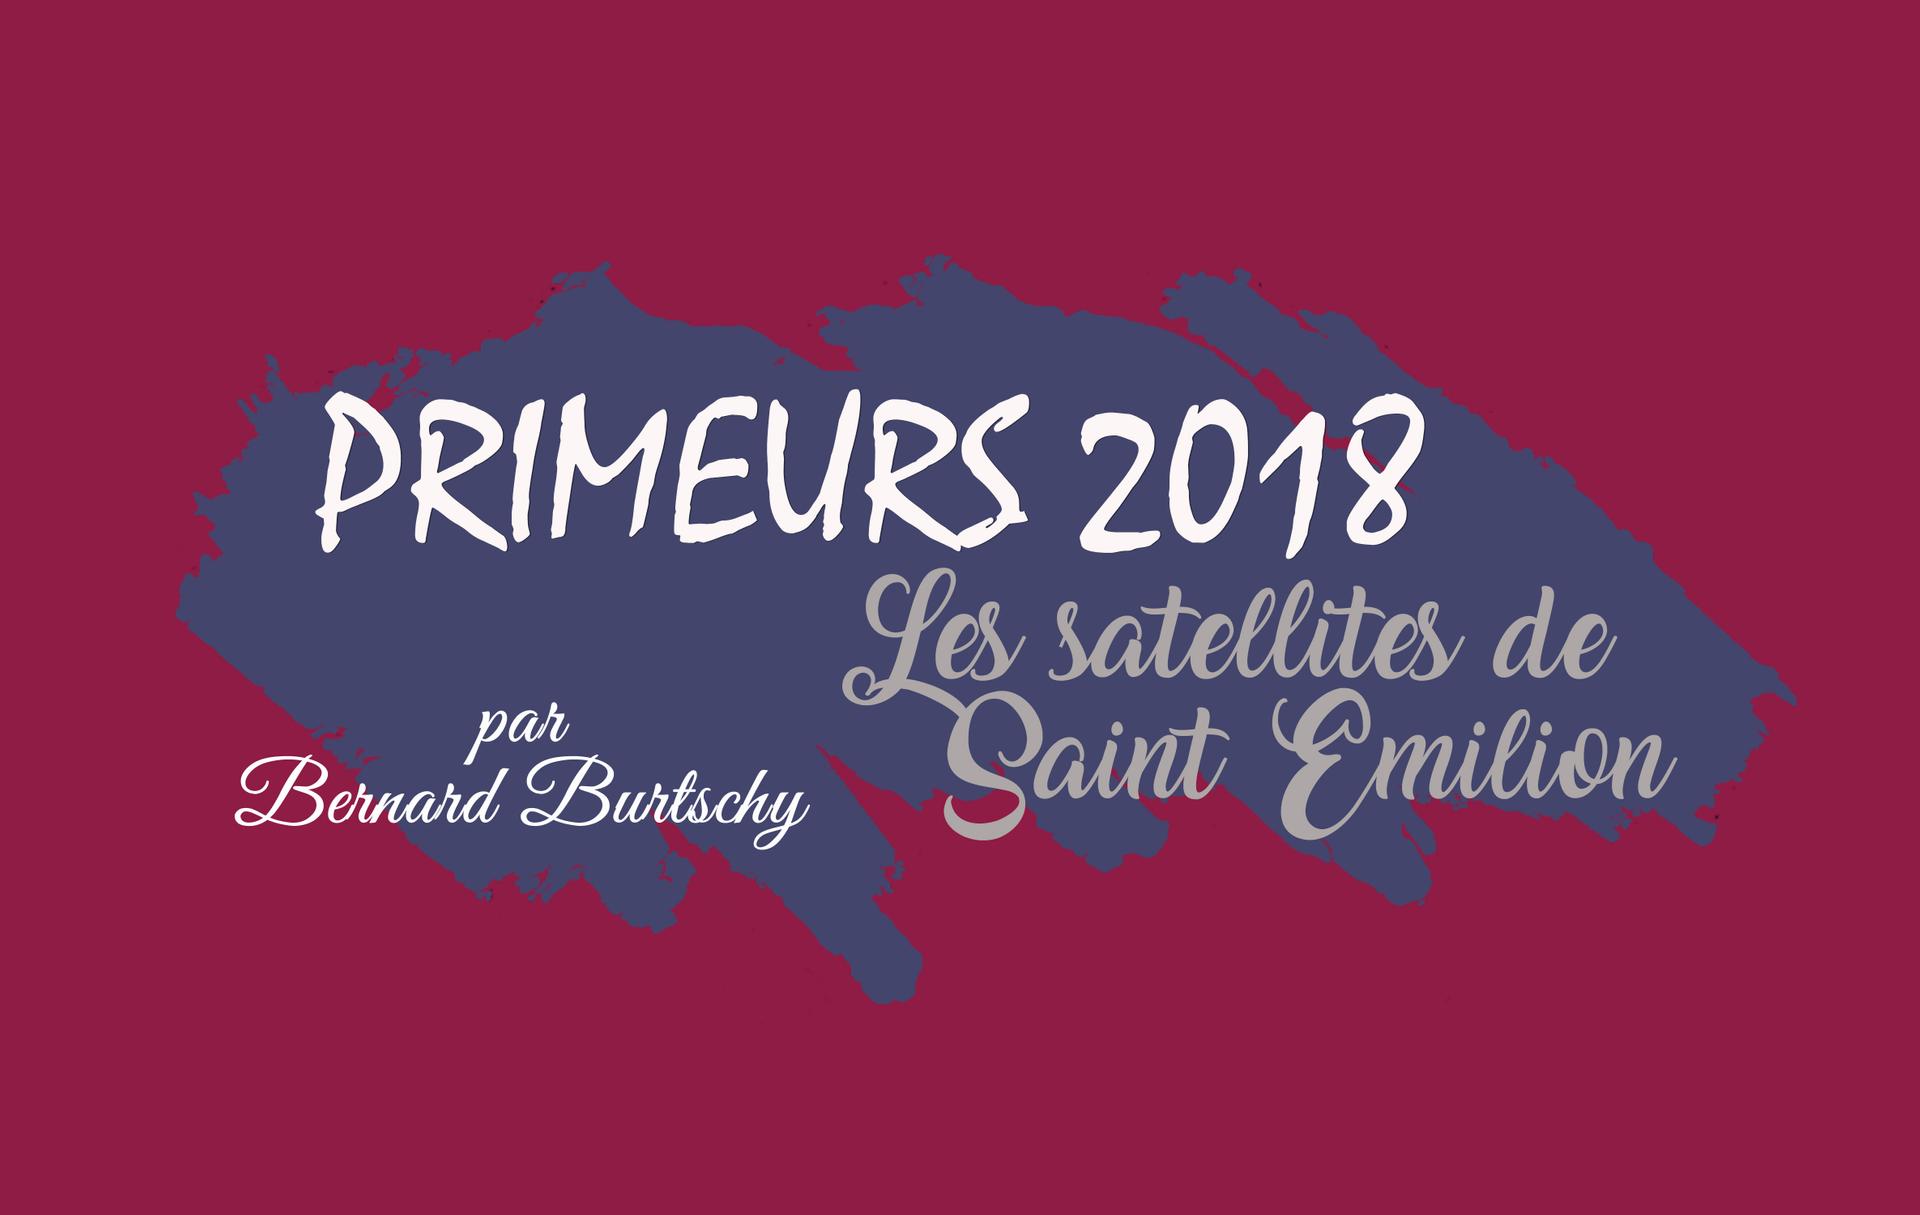 Les satellites de Saint-Emilion en 2018 : les terroirs froids se réveillent